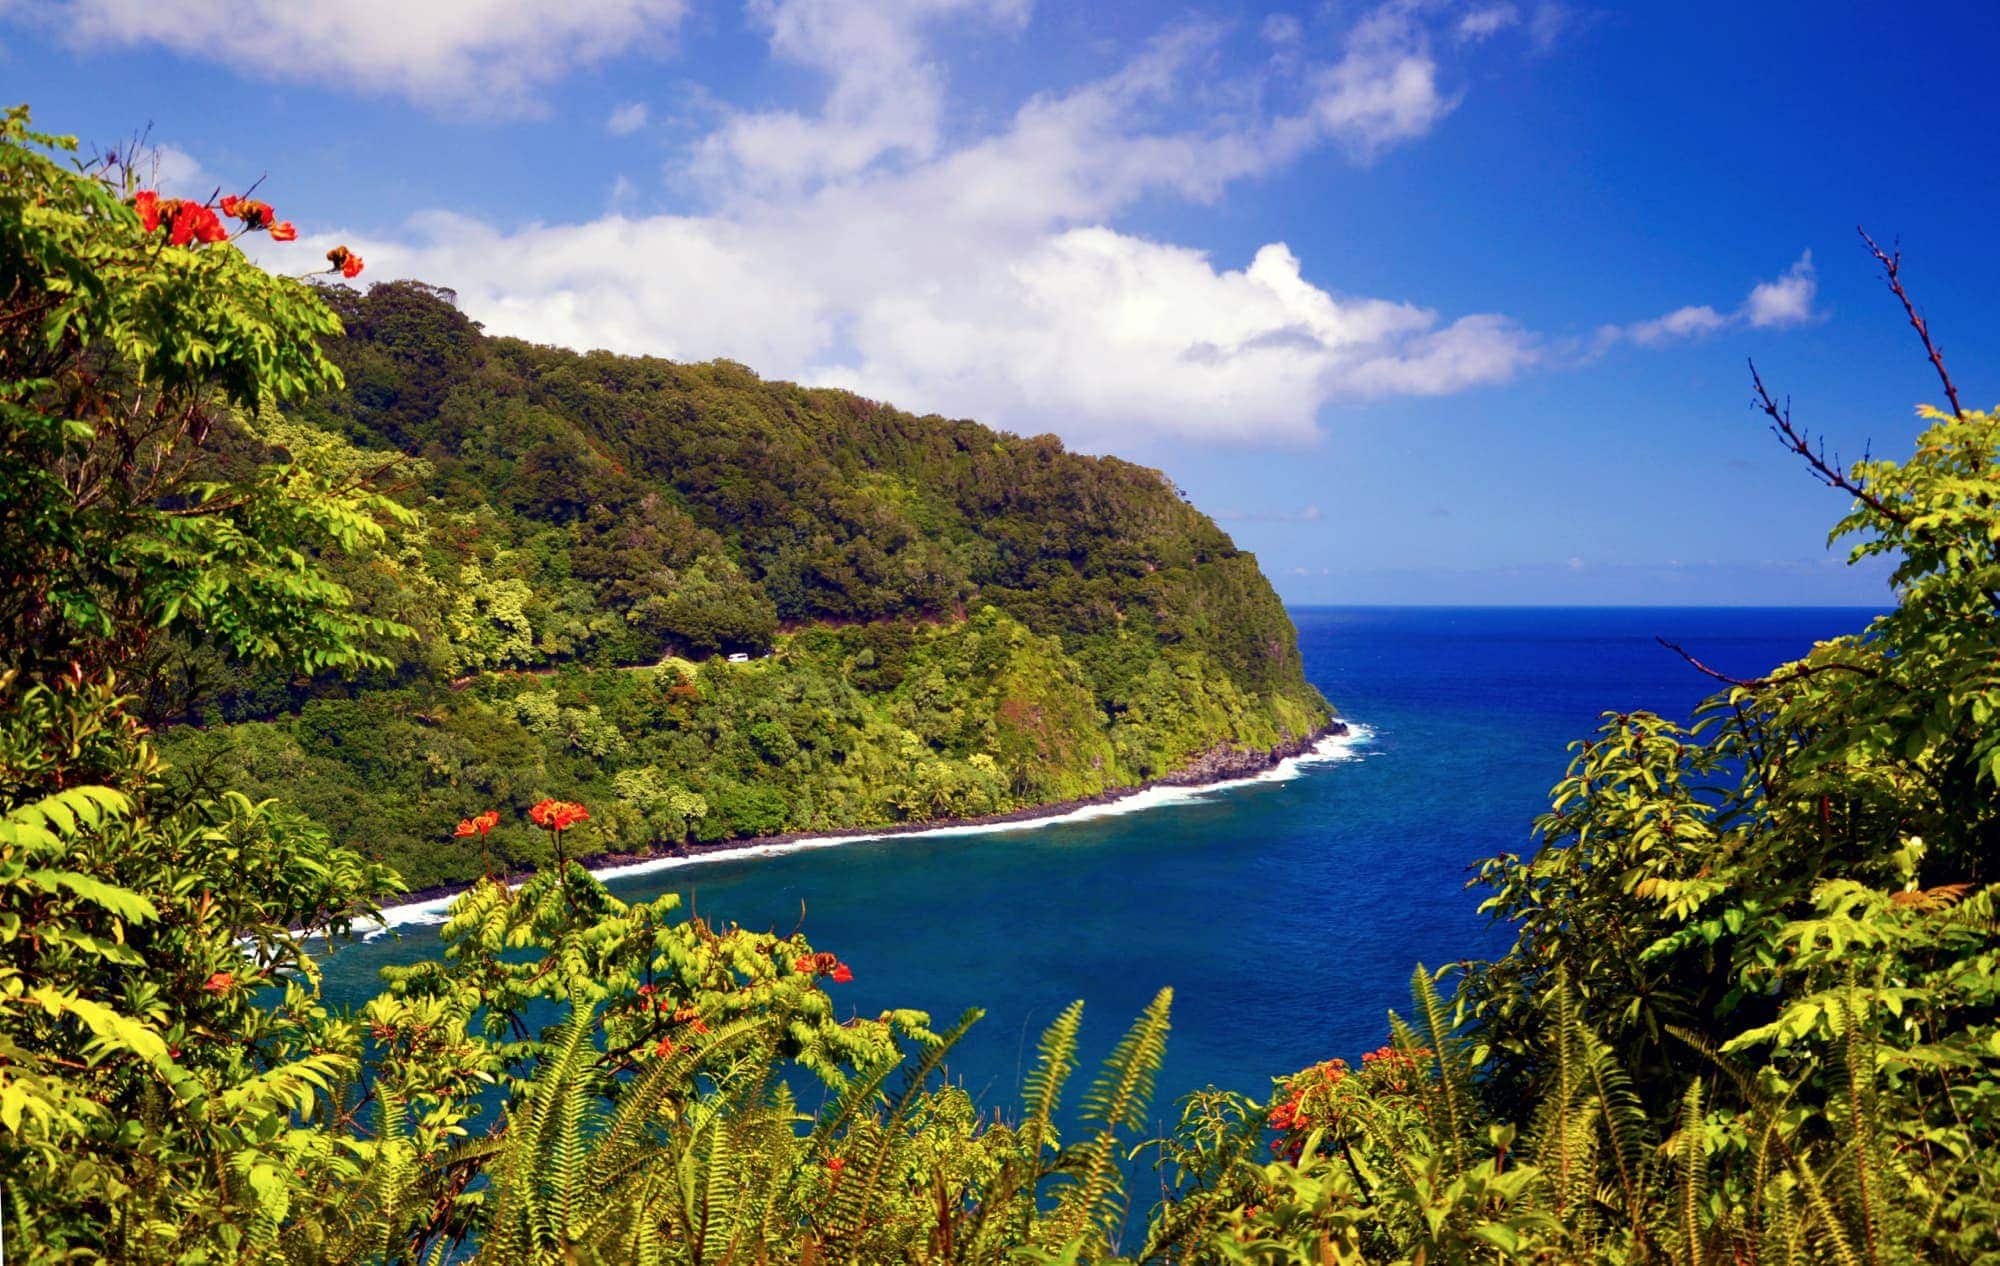 Maui ou la Grande île, laquelle vous convient le mieux ? Tomas Rosprim